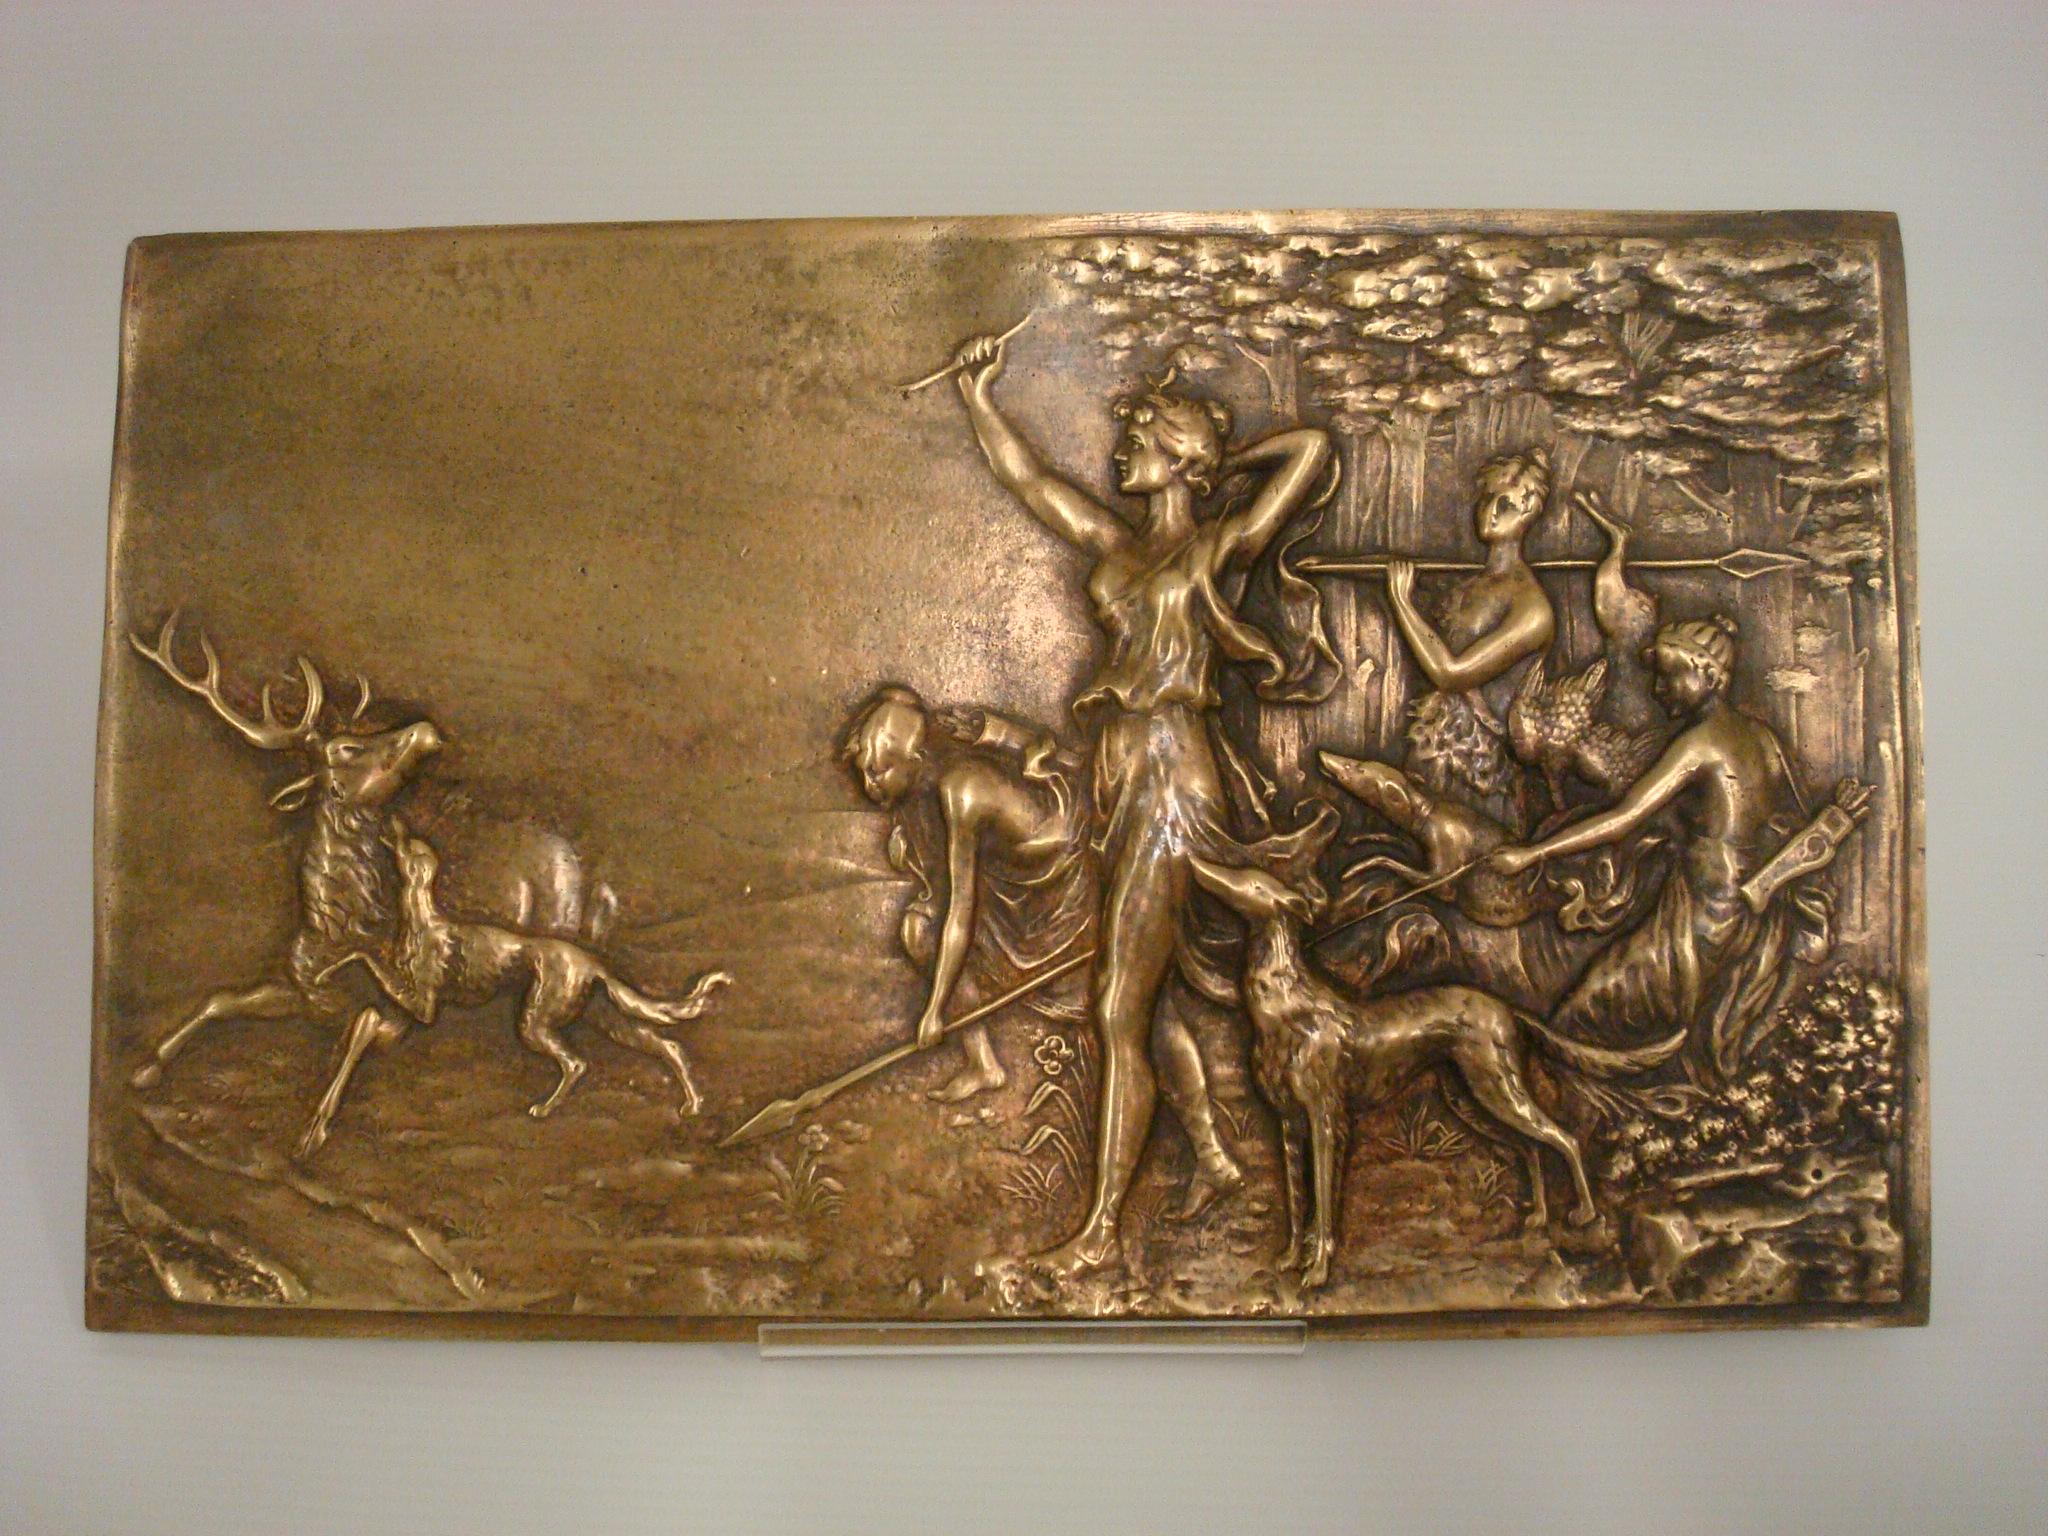 Plaque murale en bronze du 19e siècle représentant Diana la chasseresse. Diana avec son arc tendu et son chien de chasse à ses côtés.